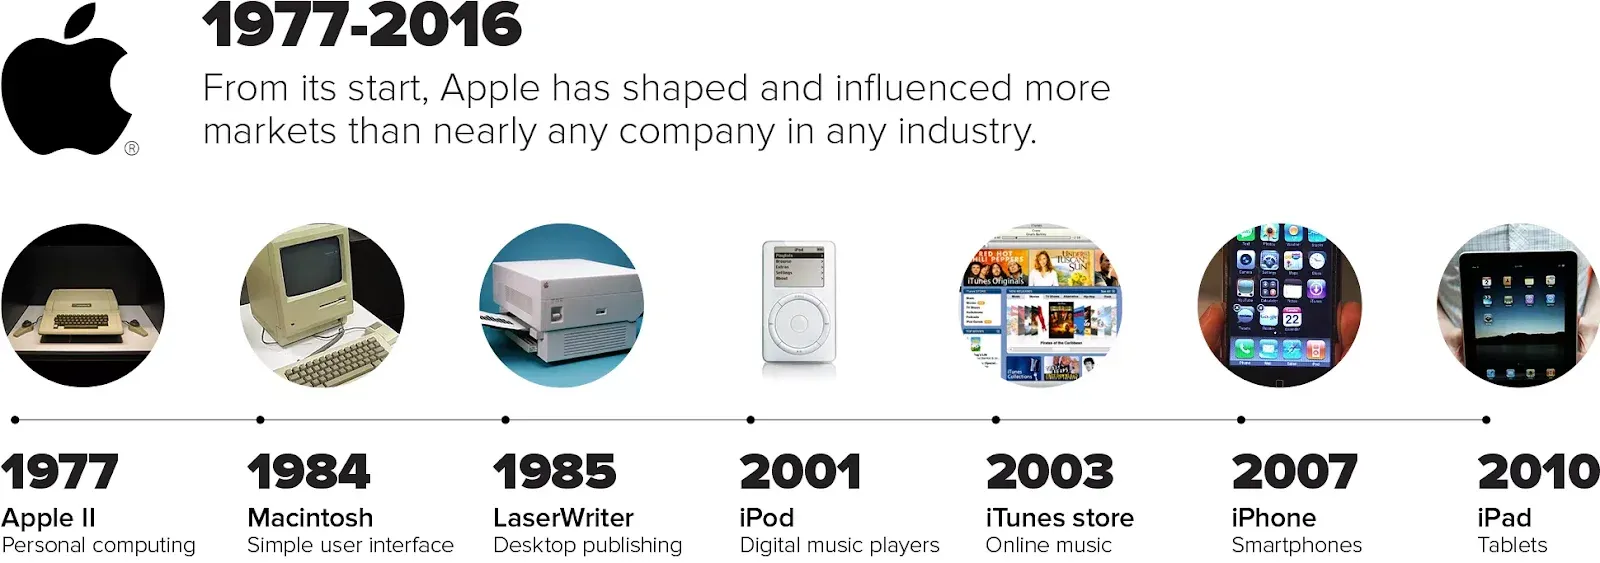 La cronologia dell'innovazione Apple | Fonte: cnet.com